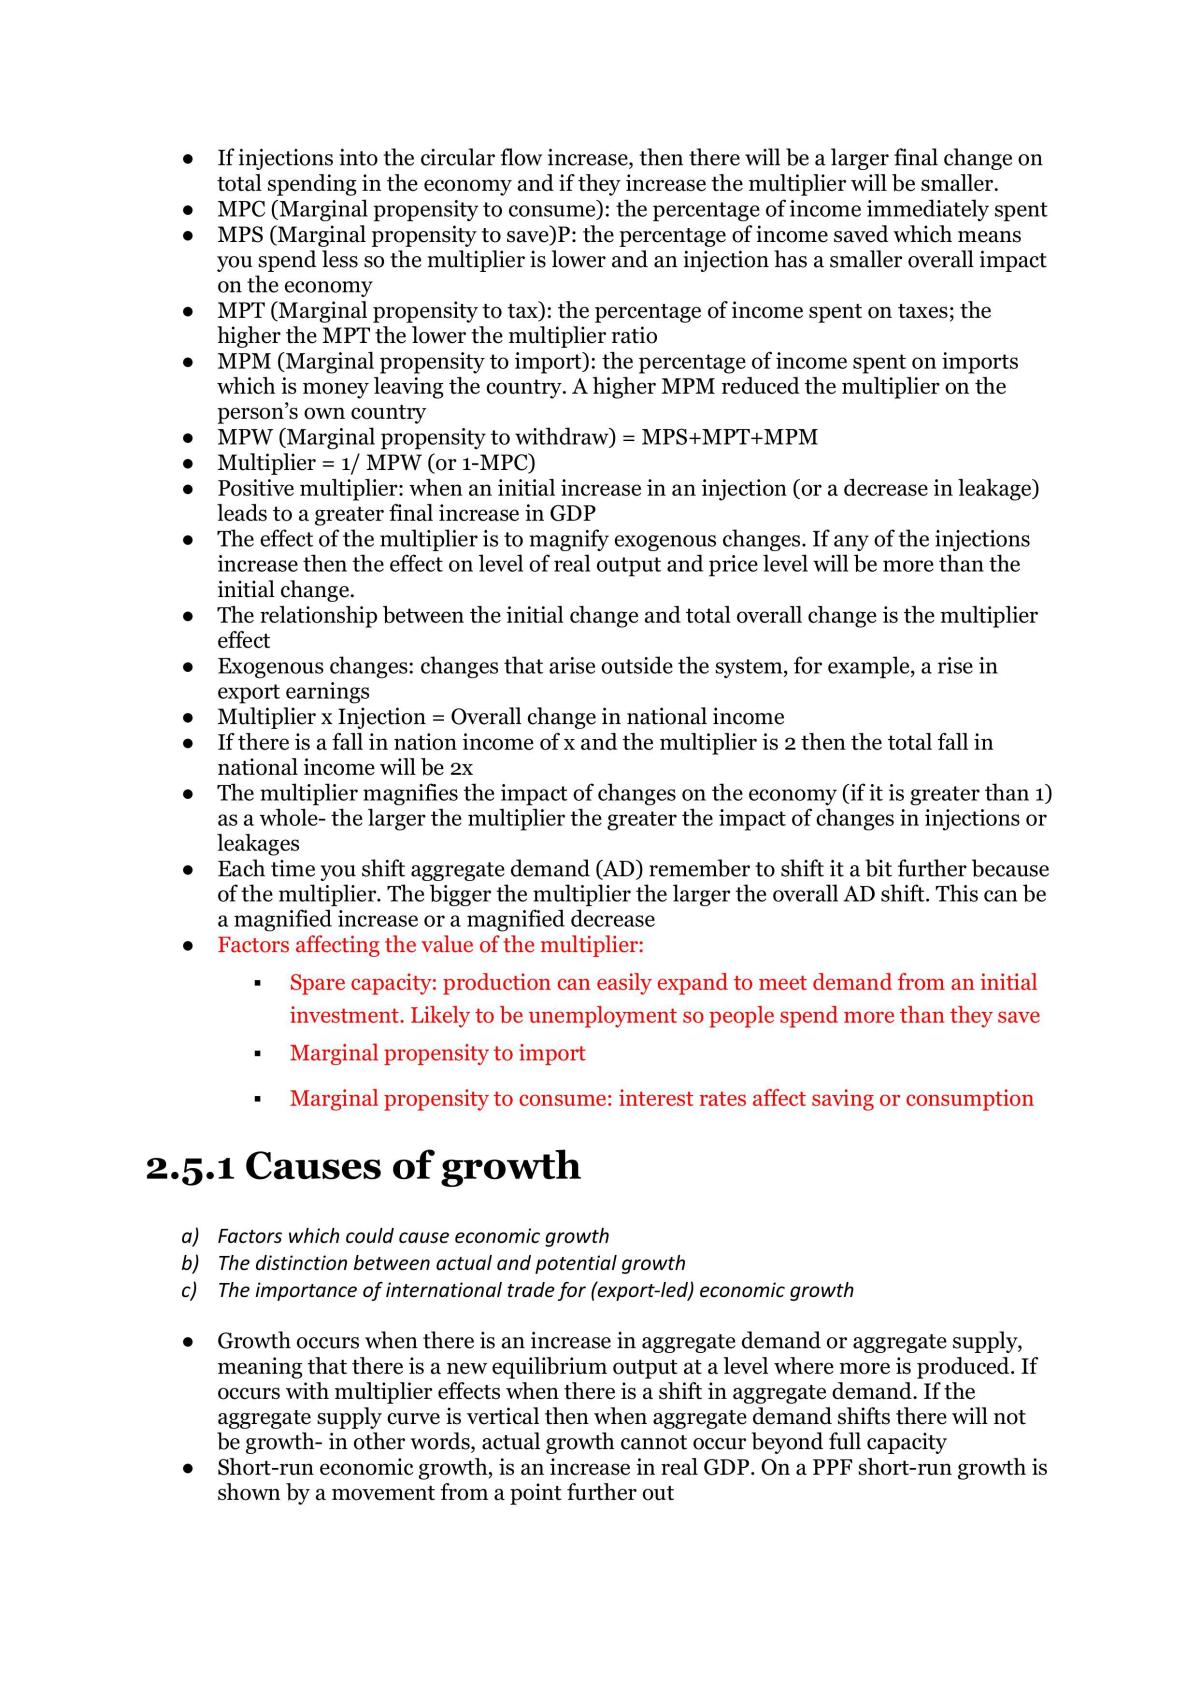 Edexcel Economics A-level Theme 2 Notes - Page 22